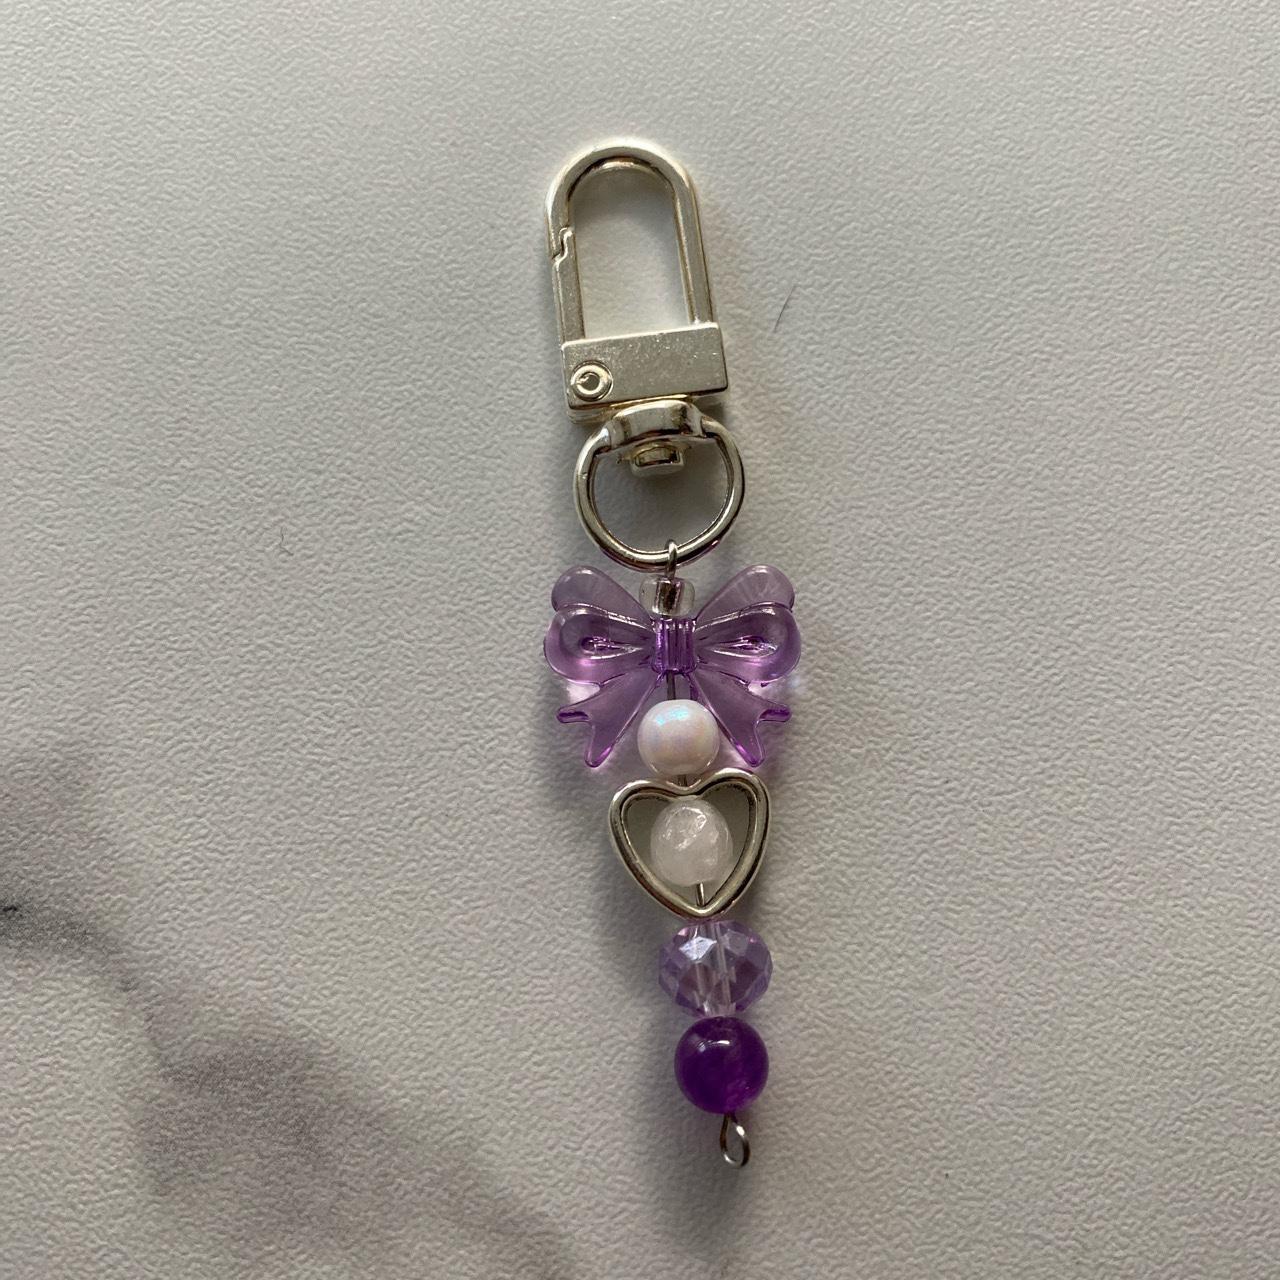 Beadsmith Women's Purple and White Jewellery